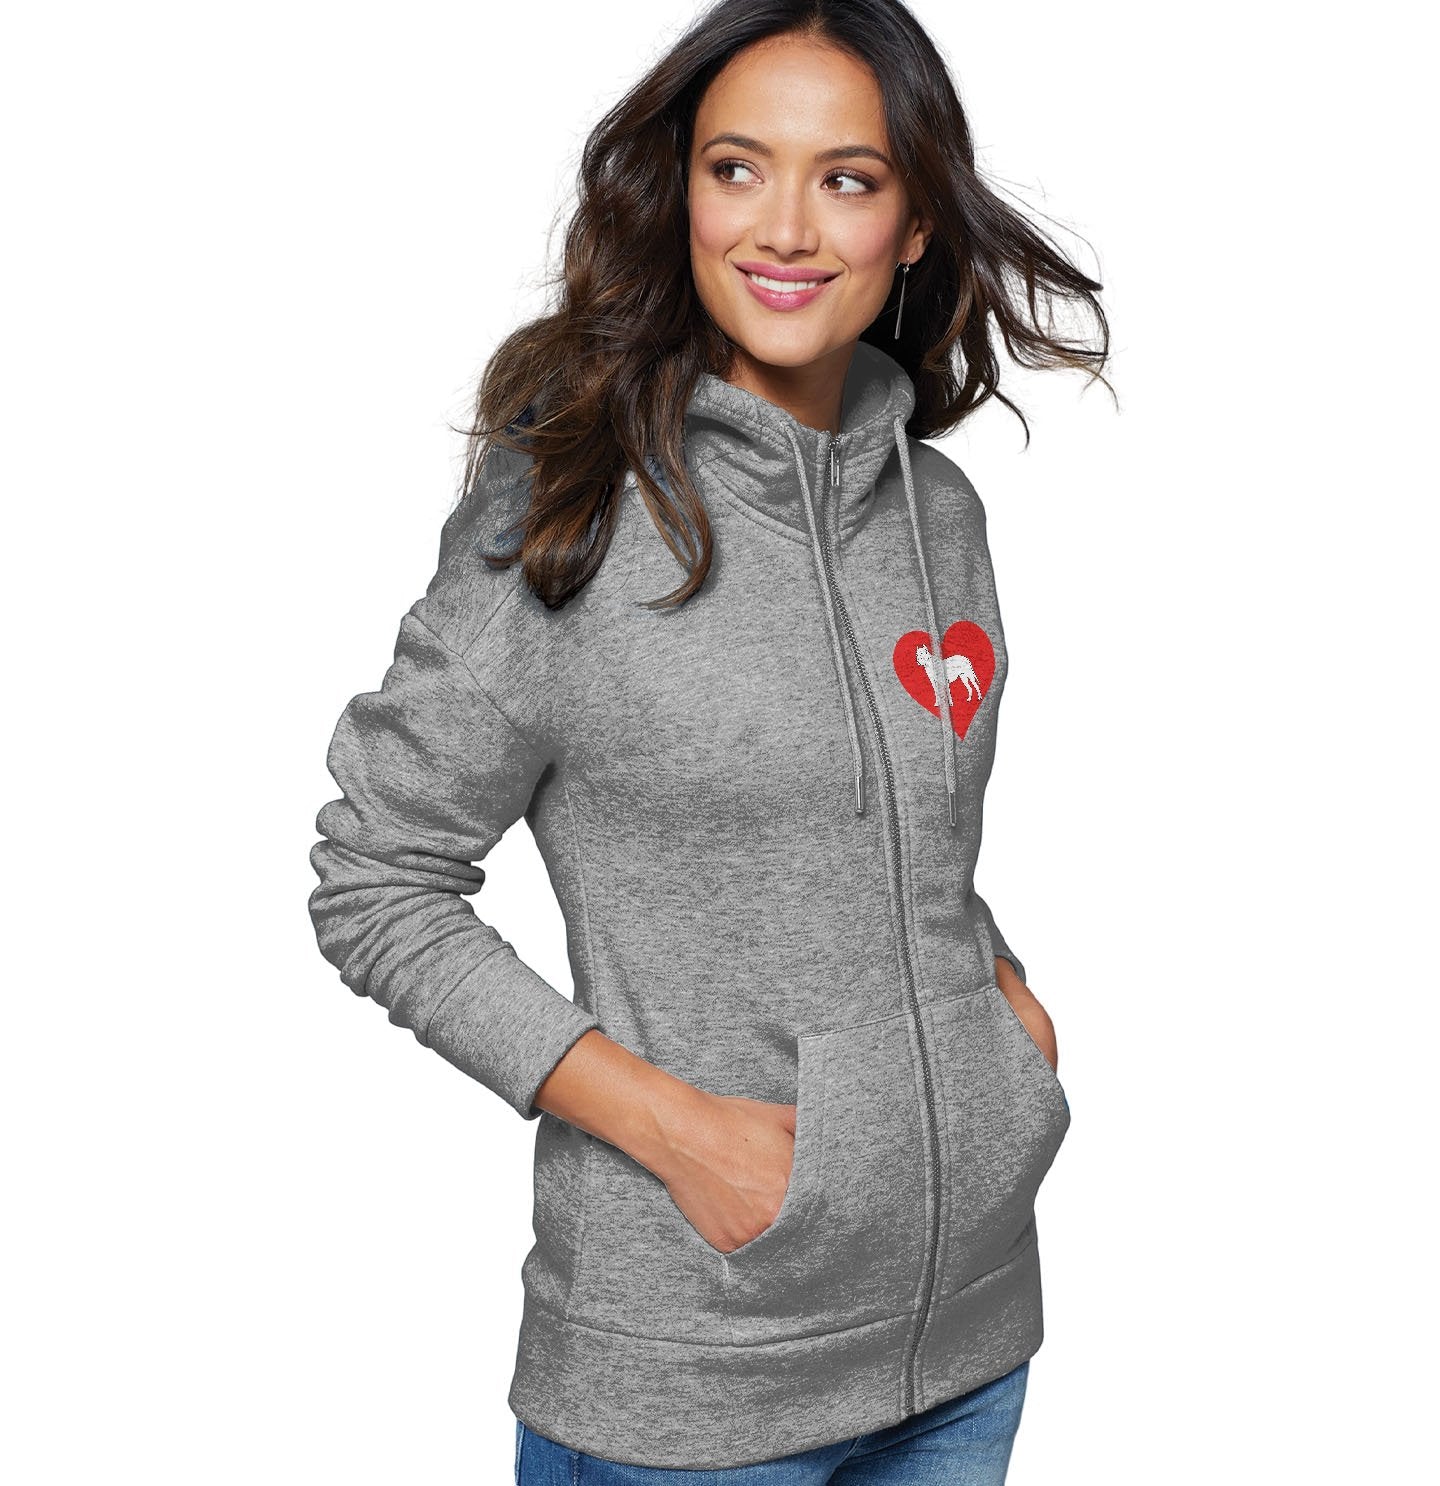 Perro de Presa Canario on Heart Left Chest - Women's Full-Zip Hoodie Sweatshirt